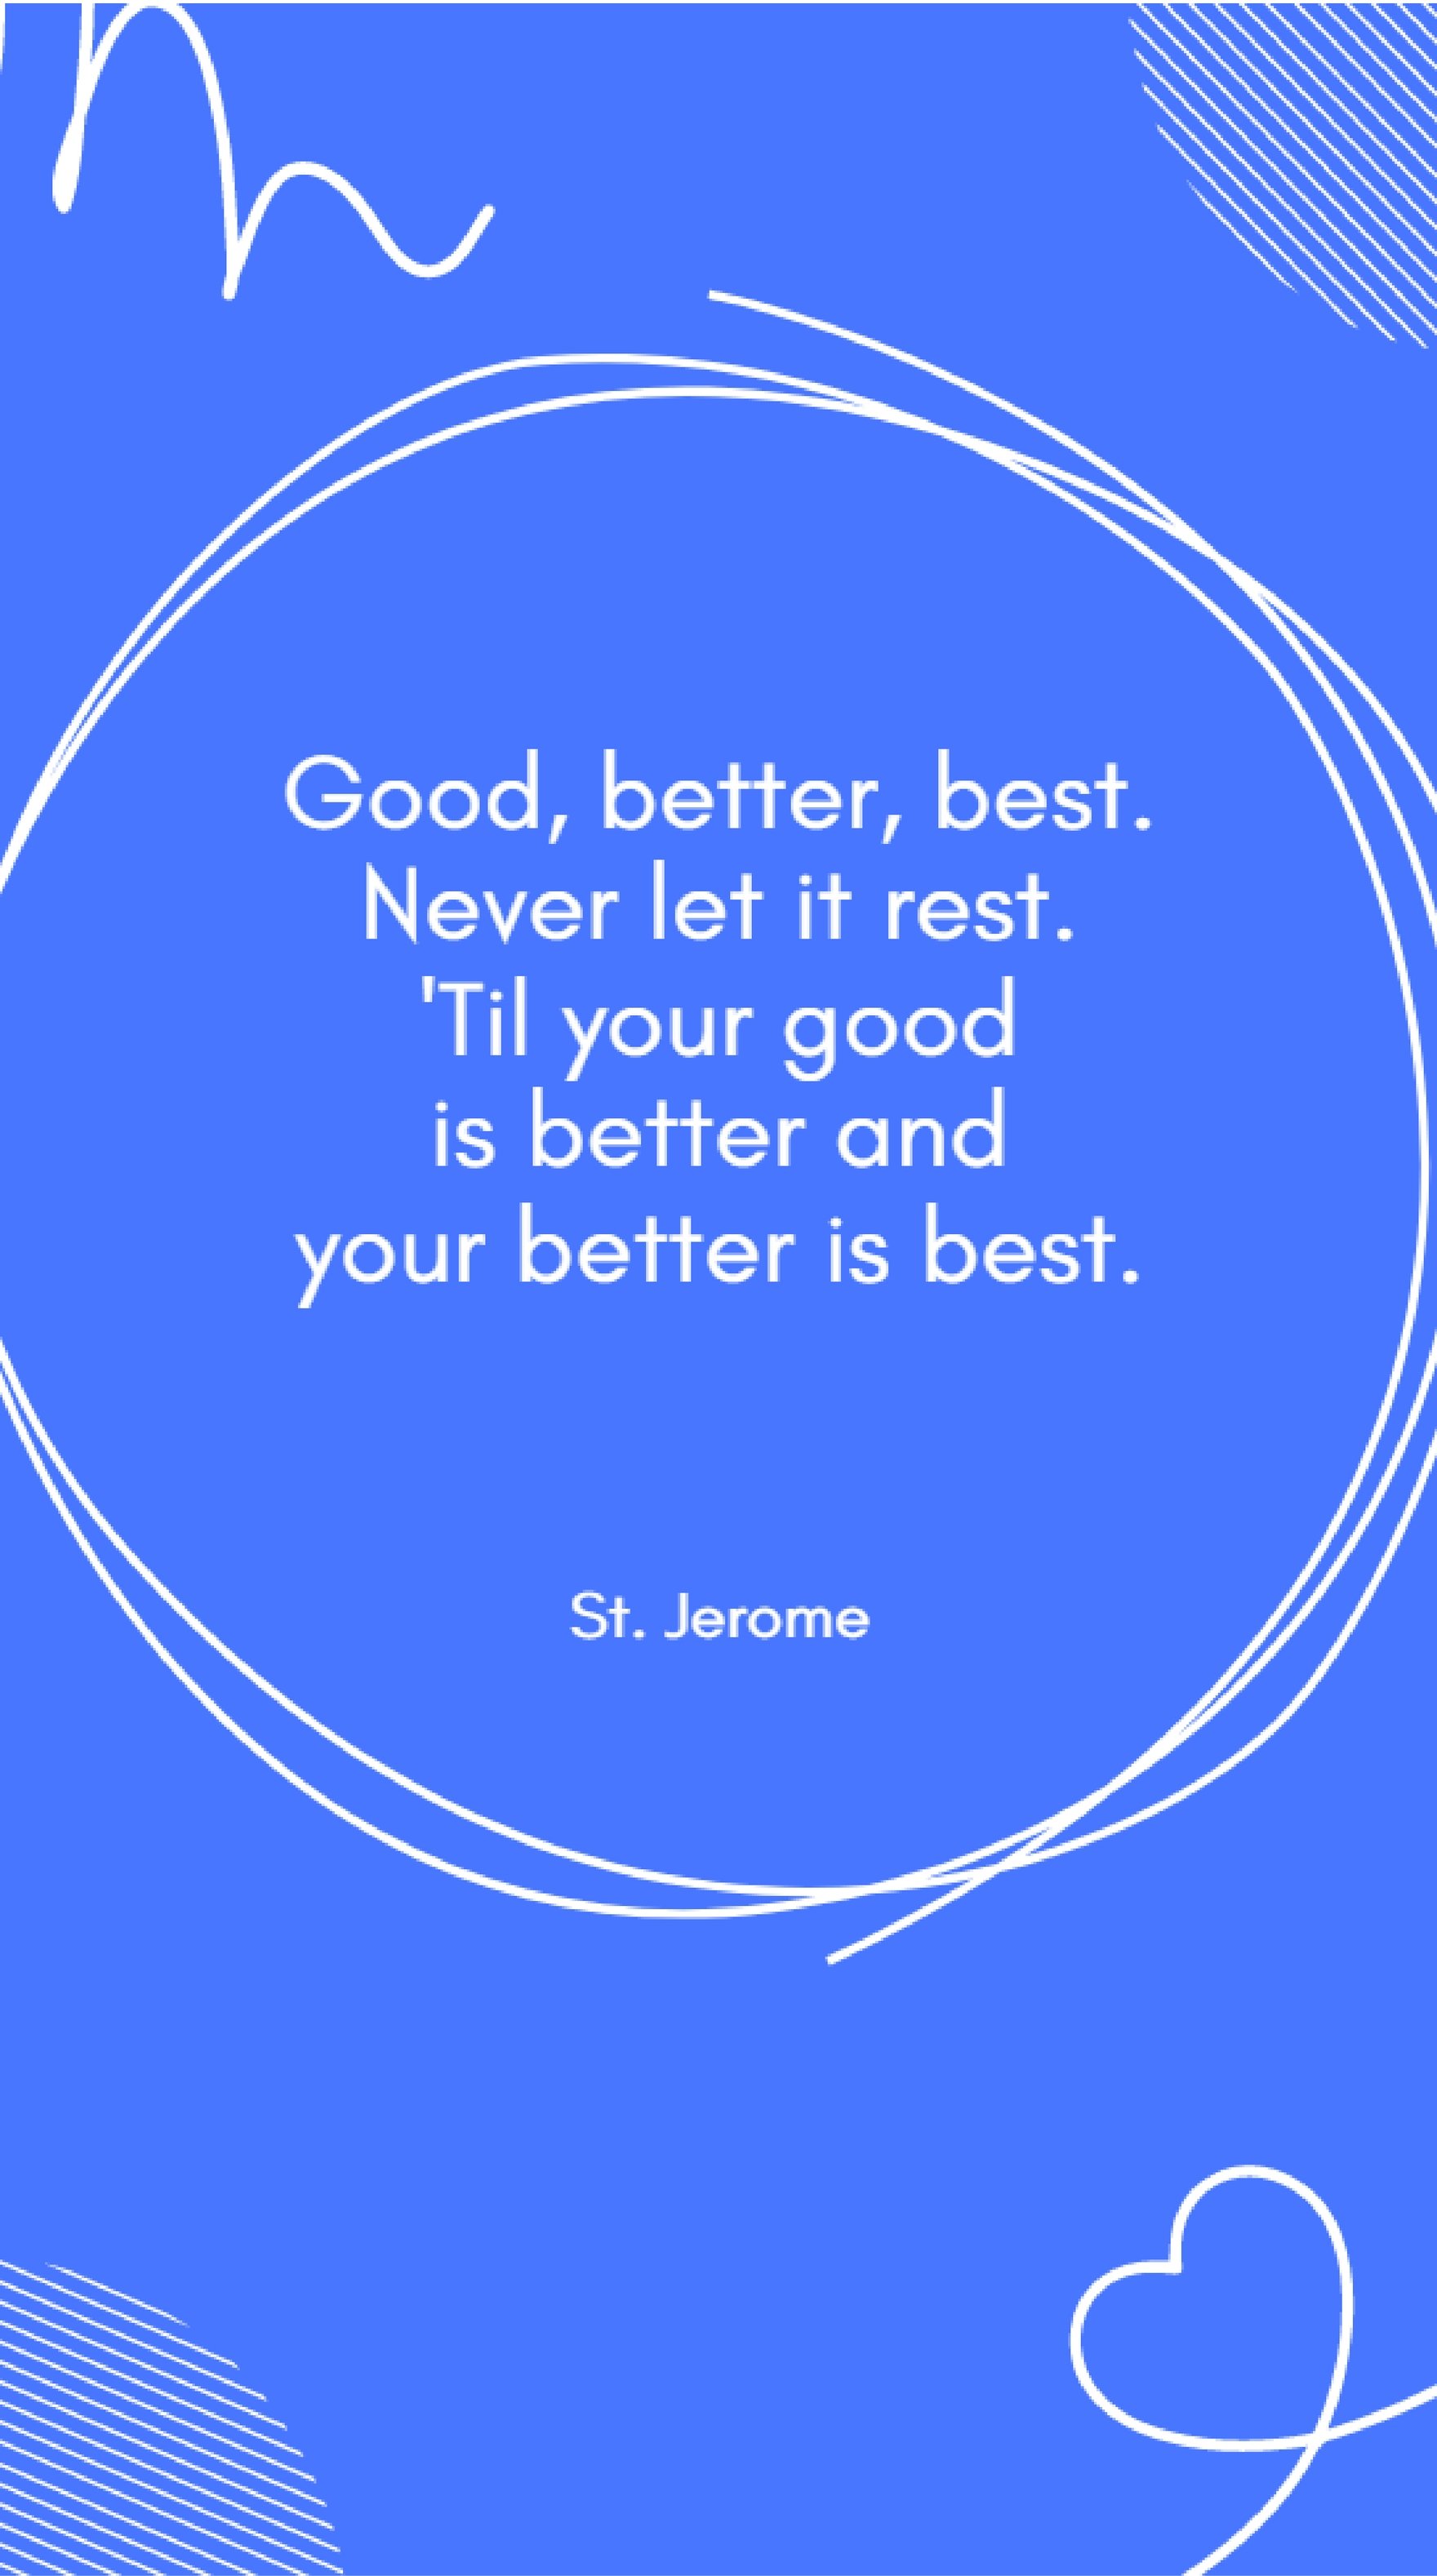 St. Jerome - Good, better, best. Never let it rest. 'Til your good is better and your better is best.